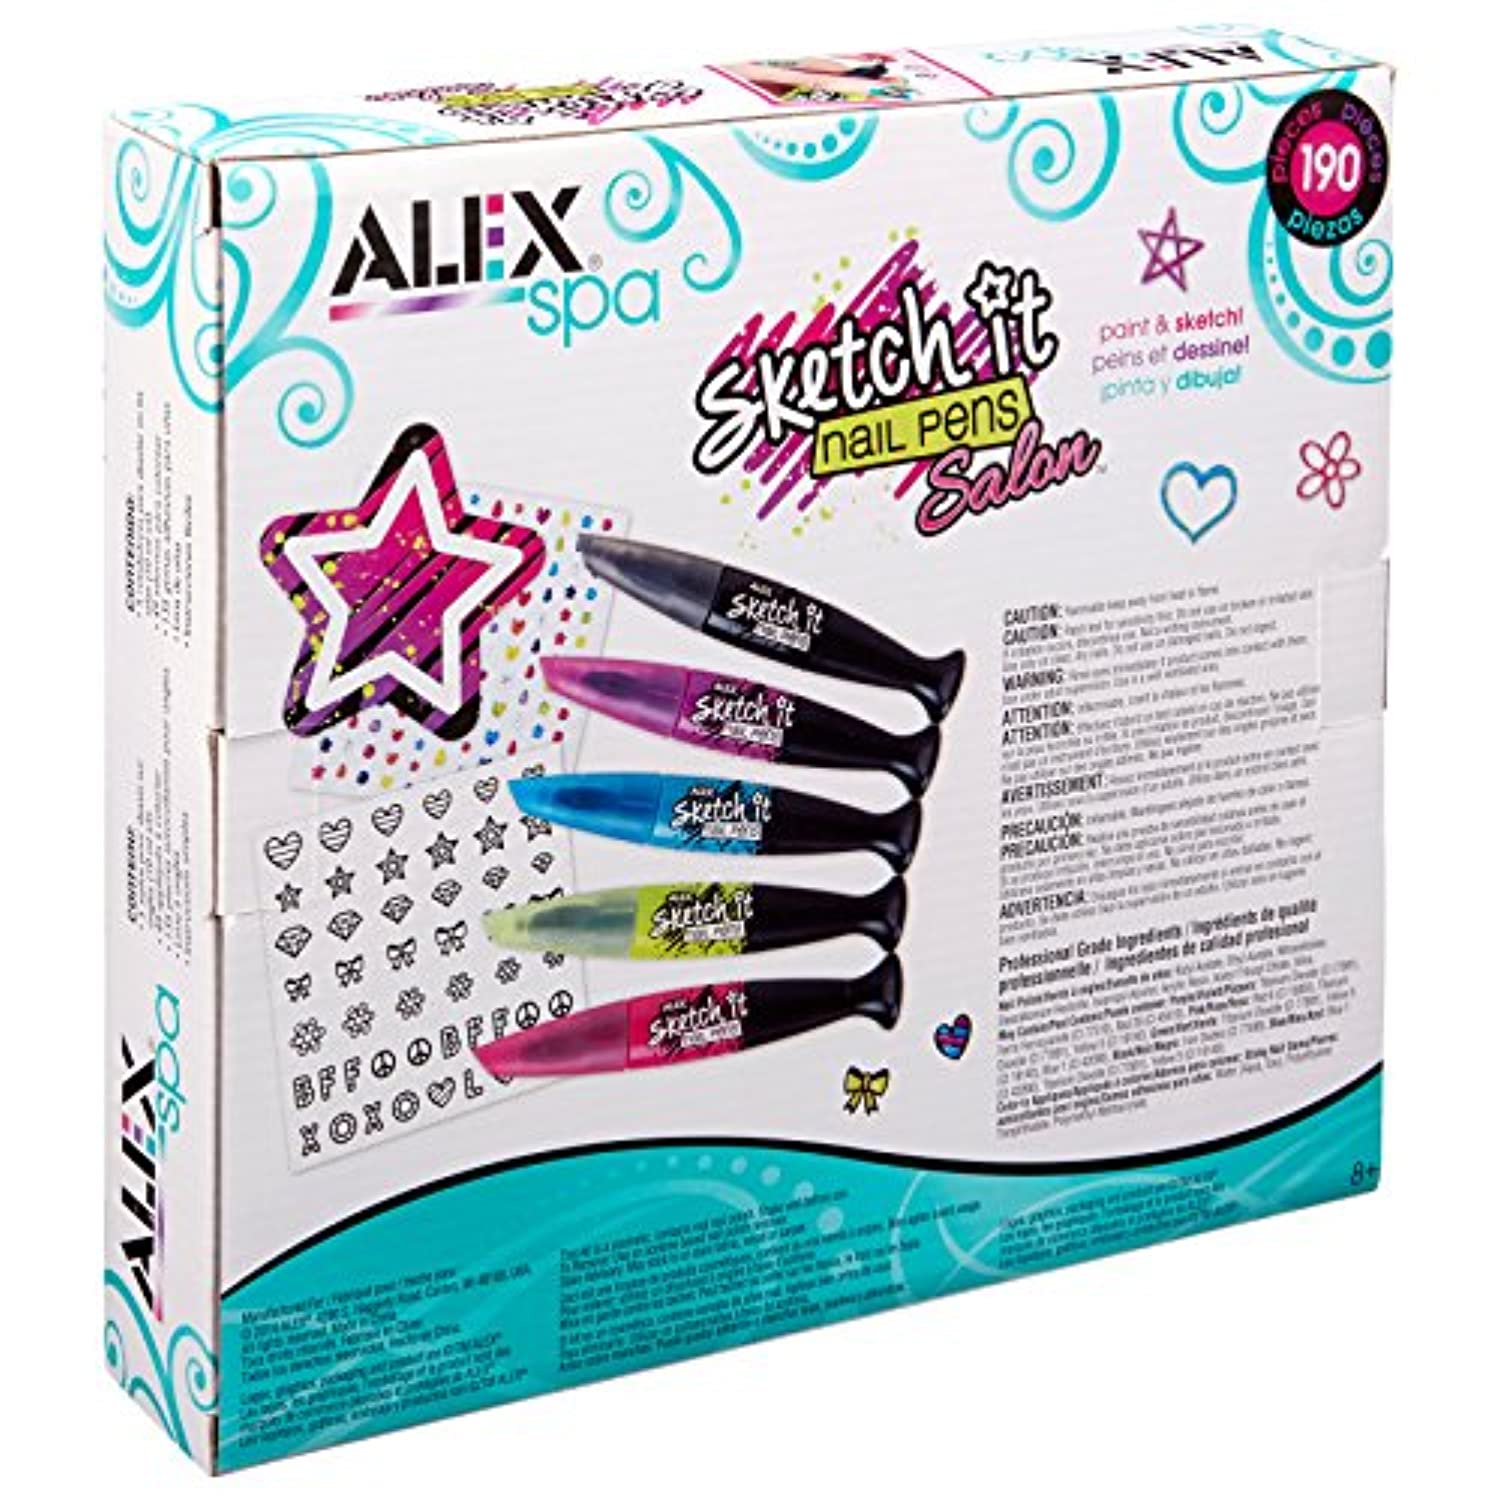 ALEX Toys Sketch It Nail Pens Salon Girls Fashion Activity